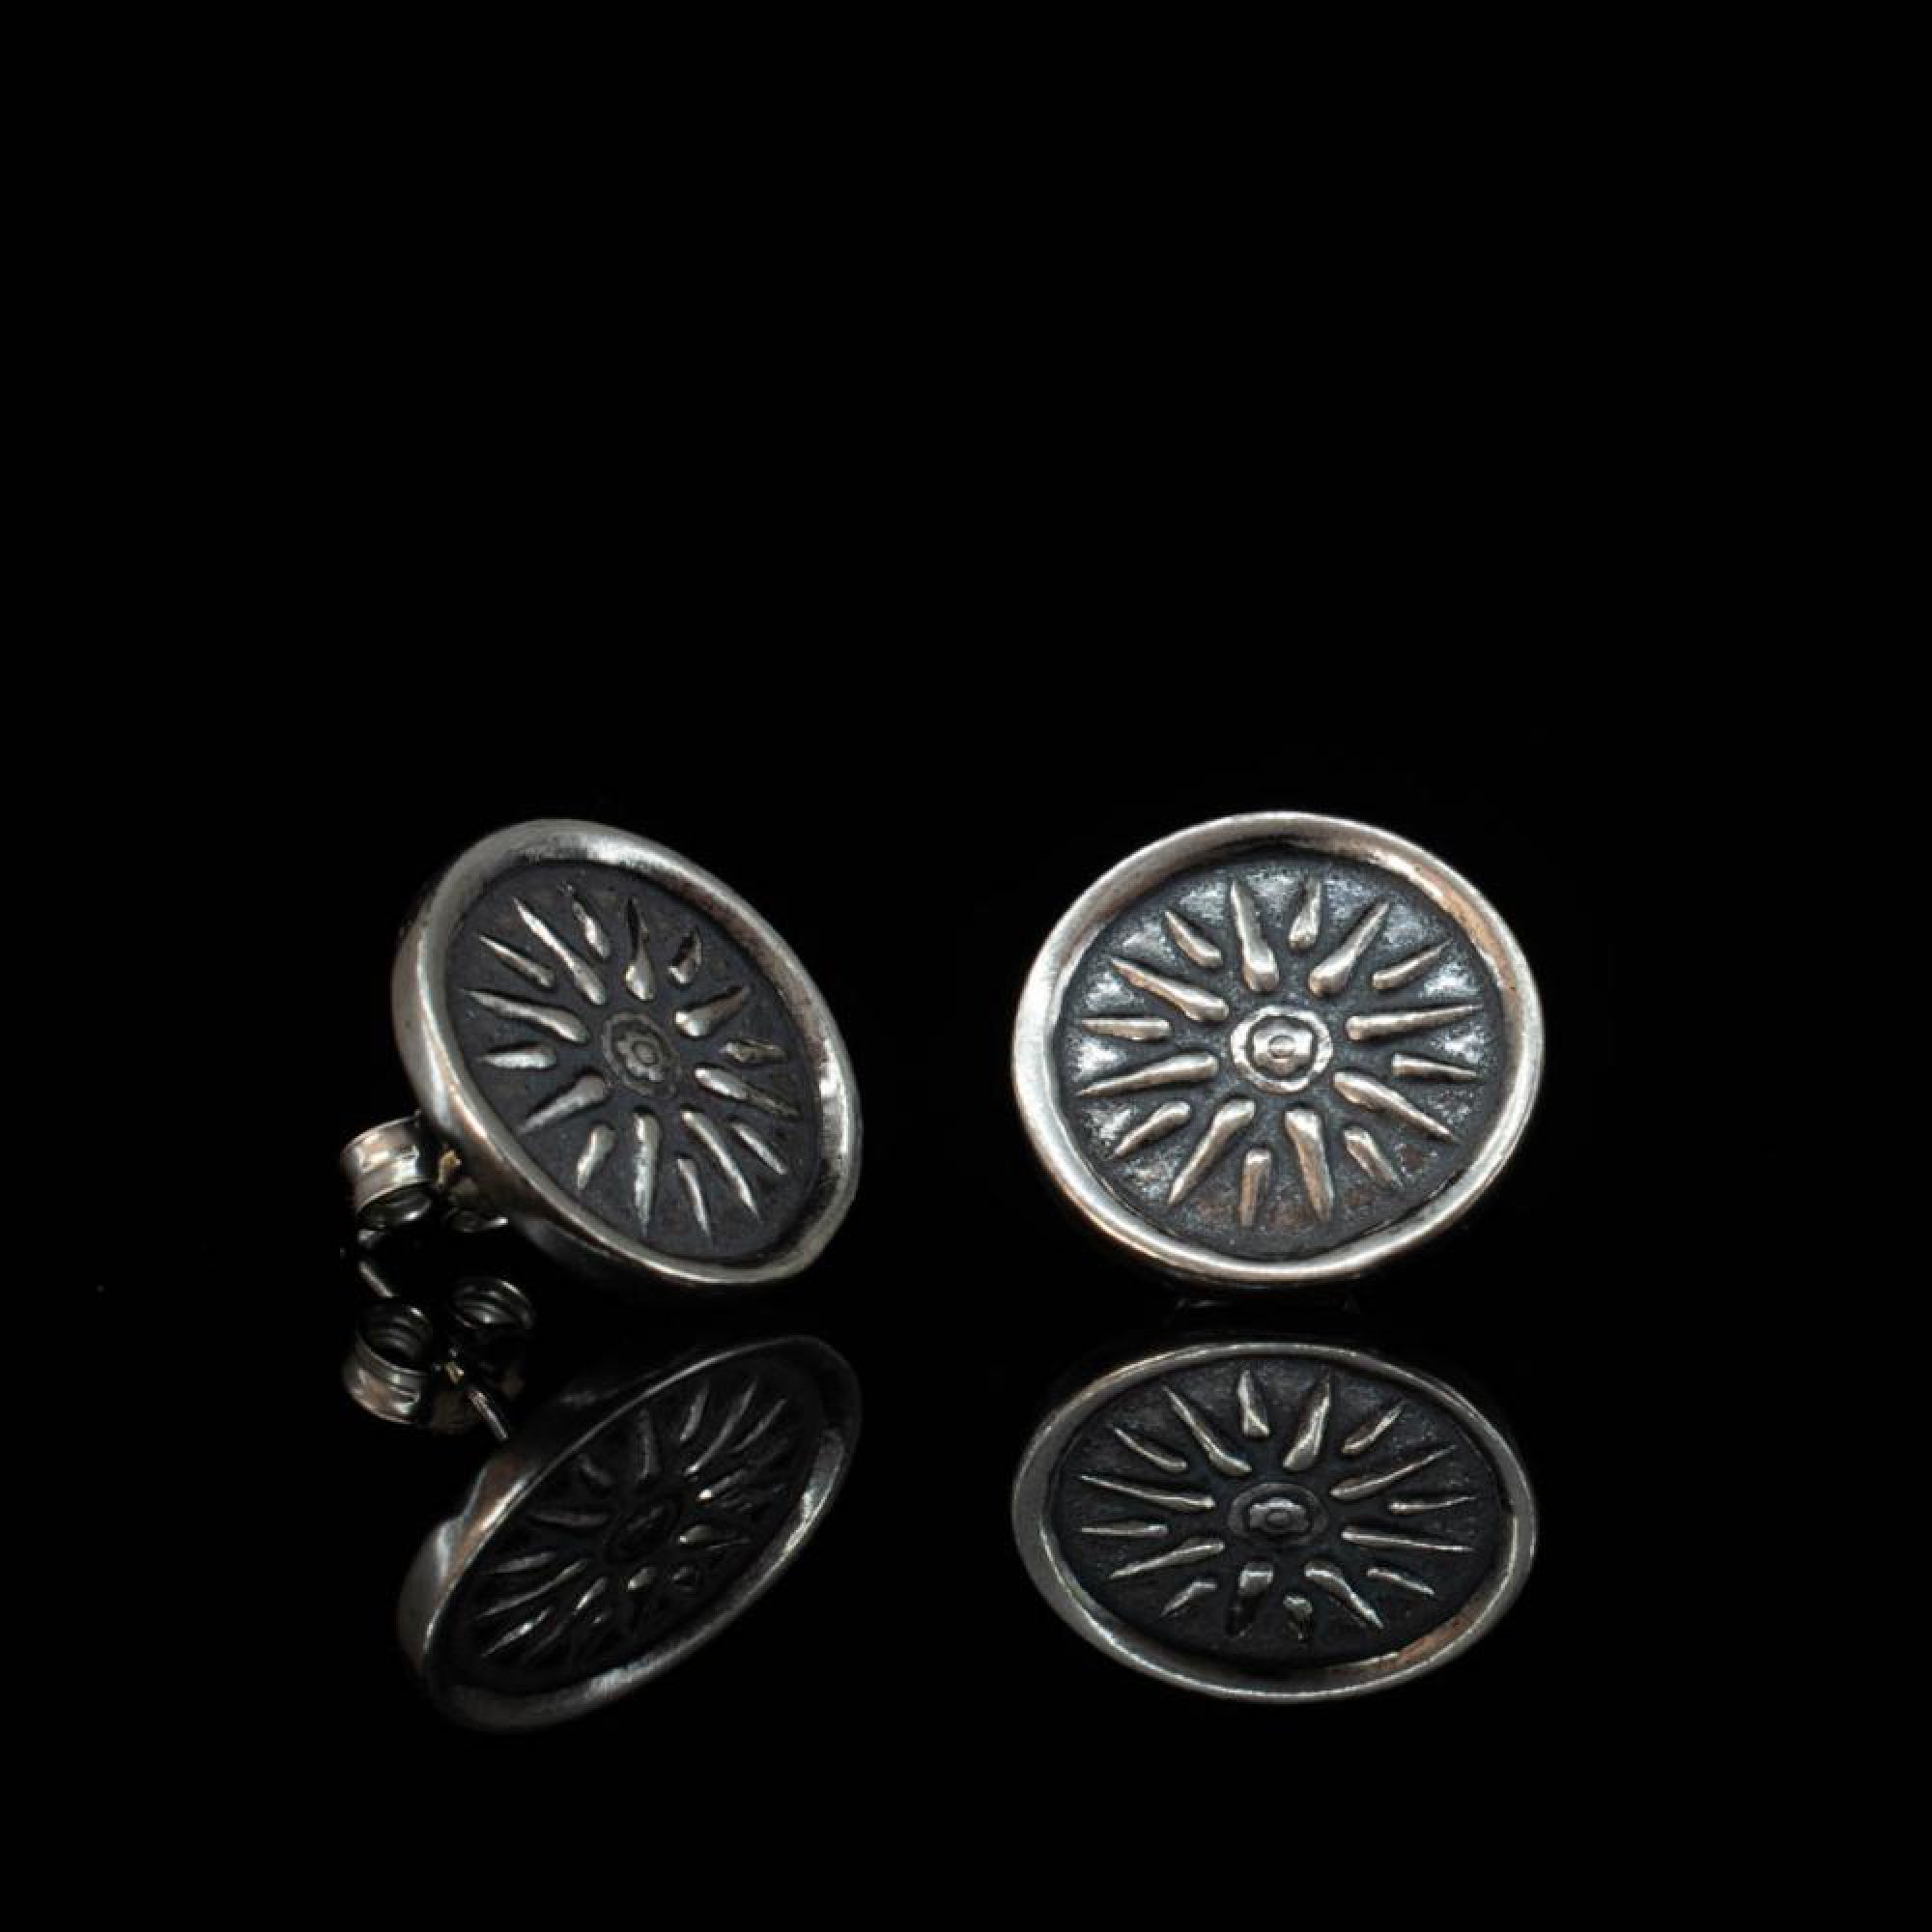 Oxidised Vergina star earrings